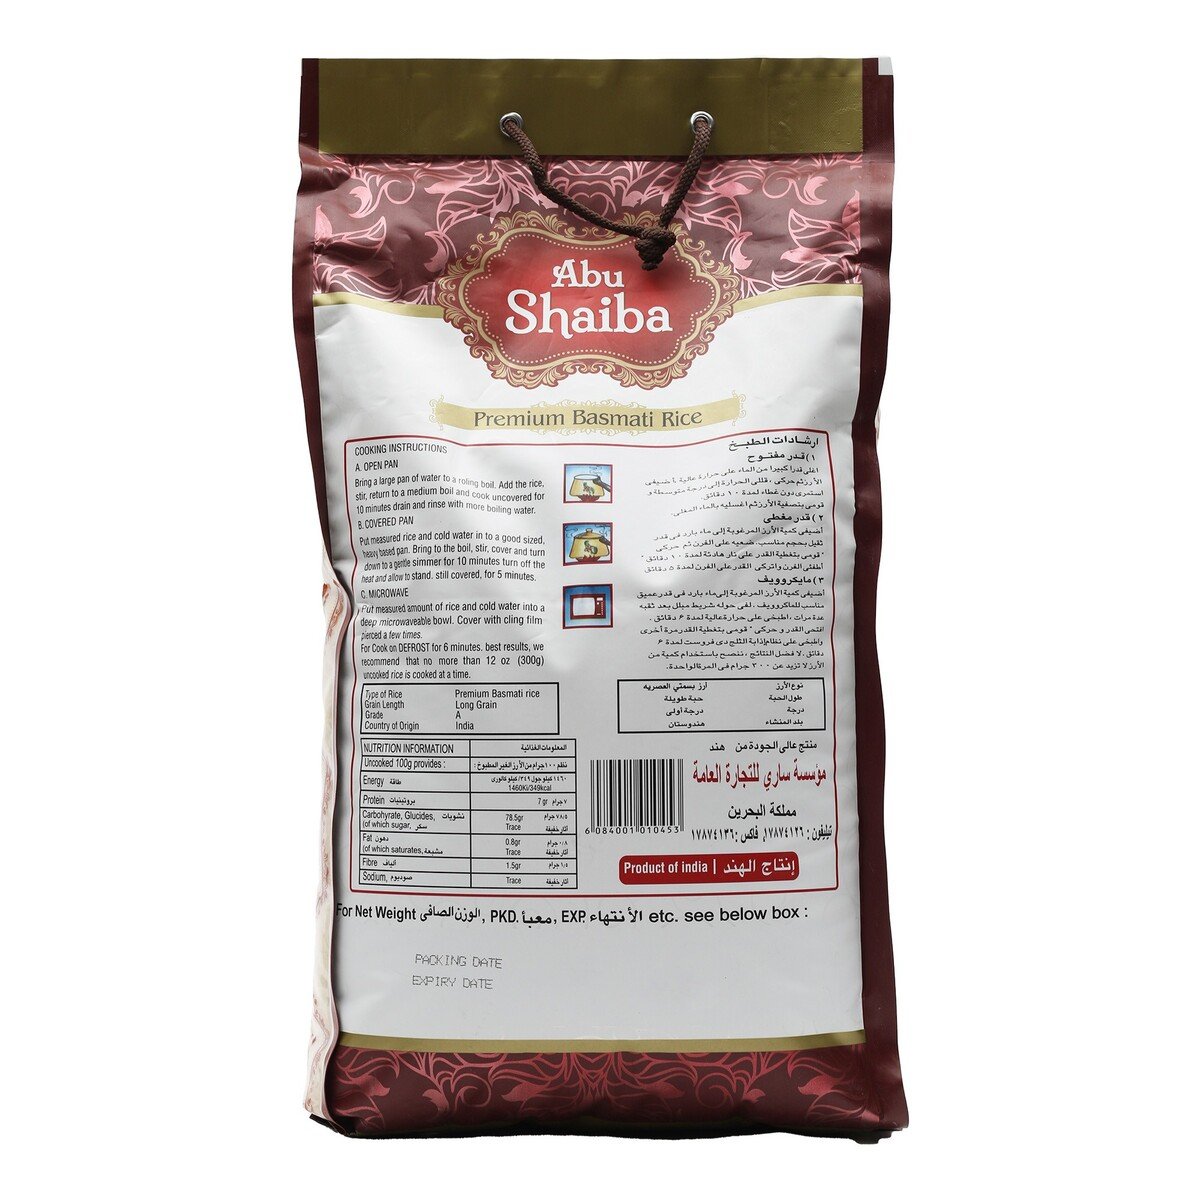 Abu Shaiba Premium Basmati Rice 10kg